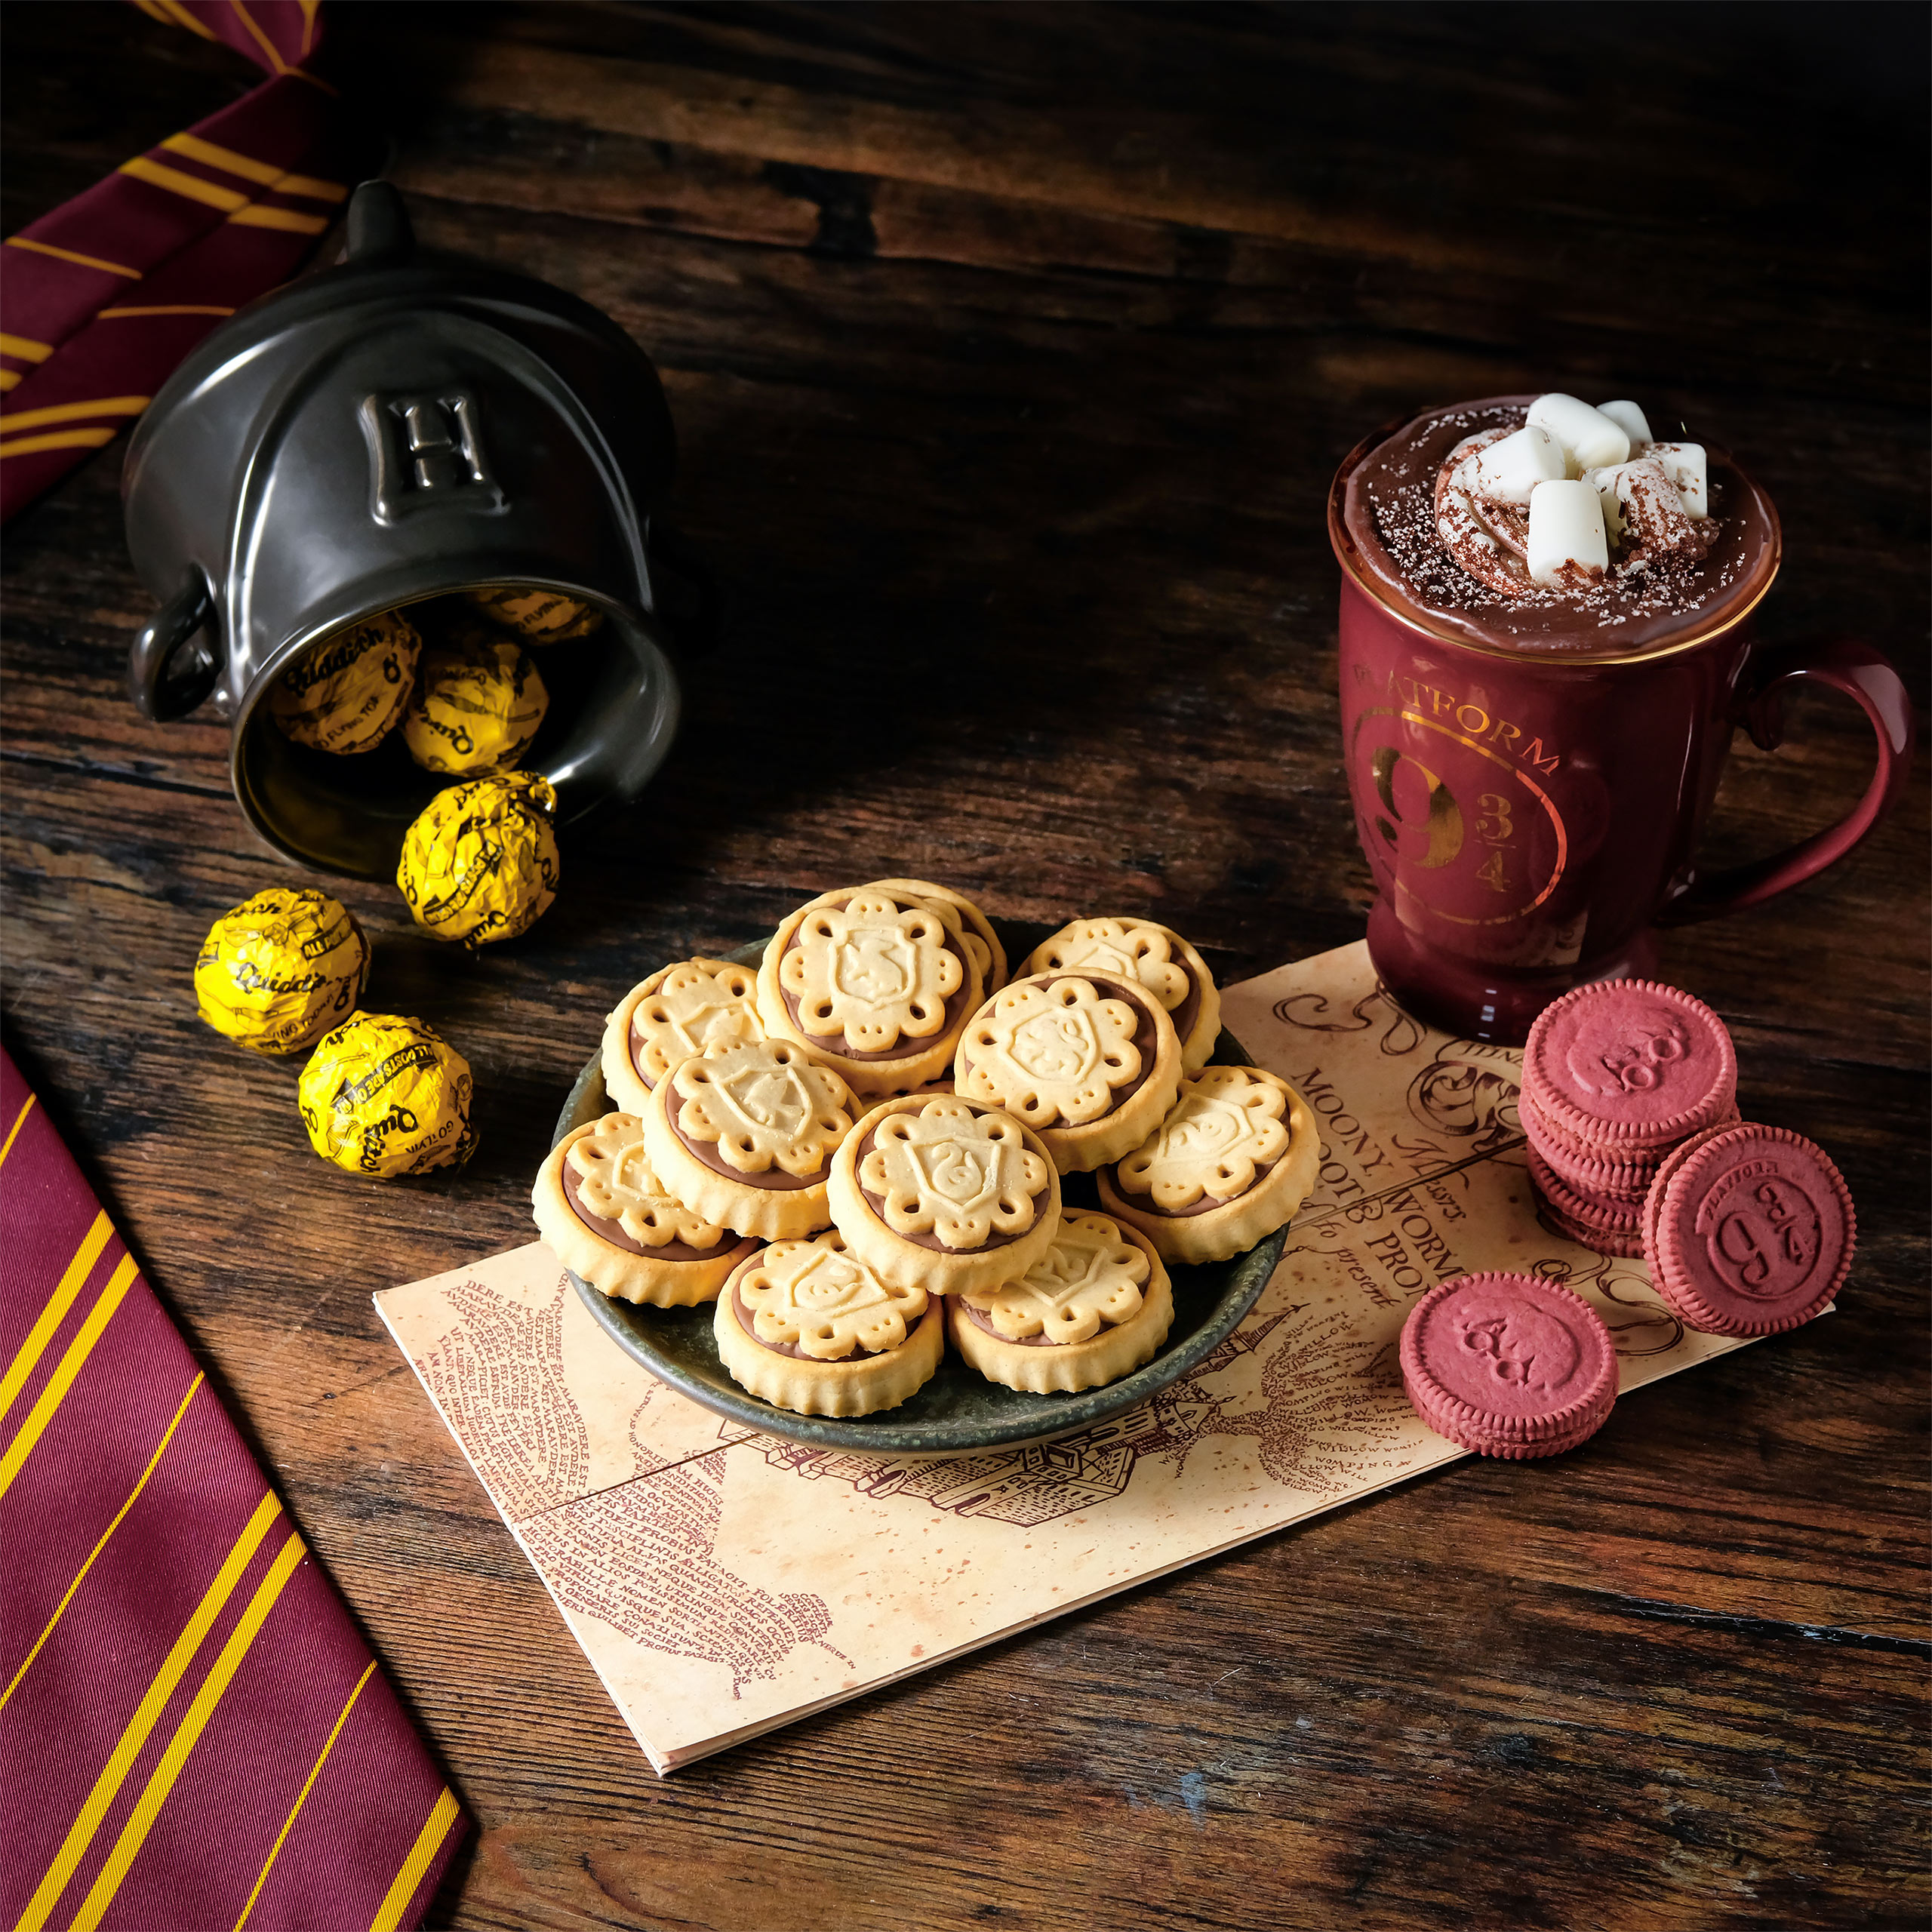 Harry Potter - Biscuits de Poudlard avec garniture à la crème vanille